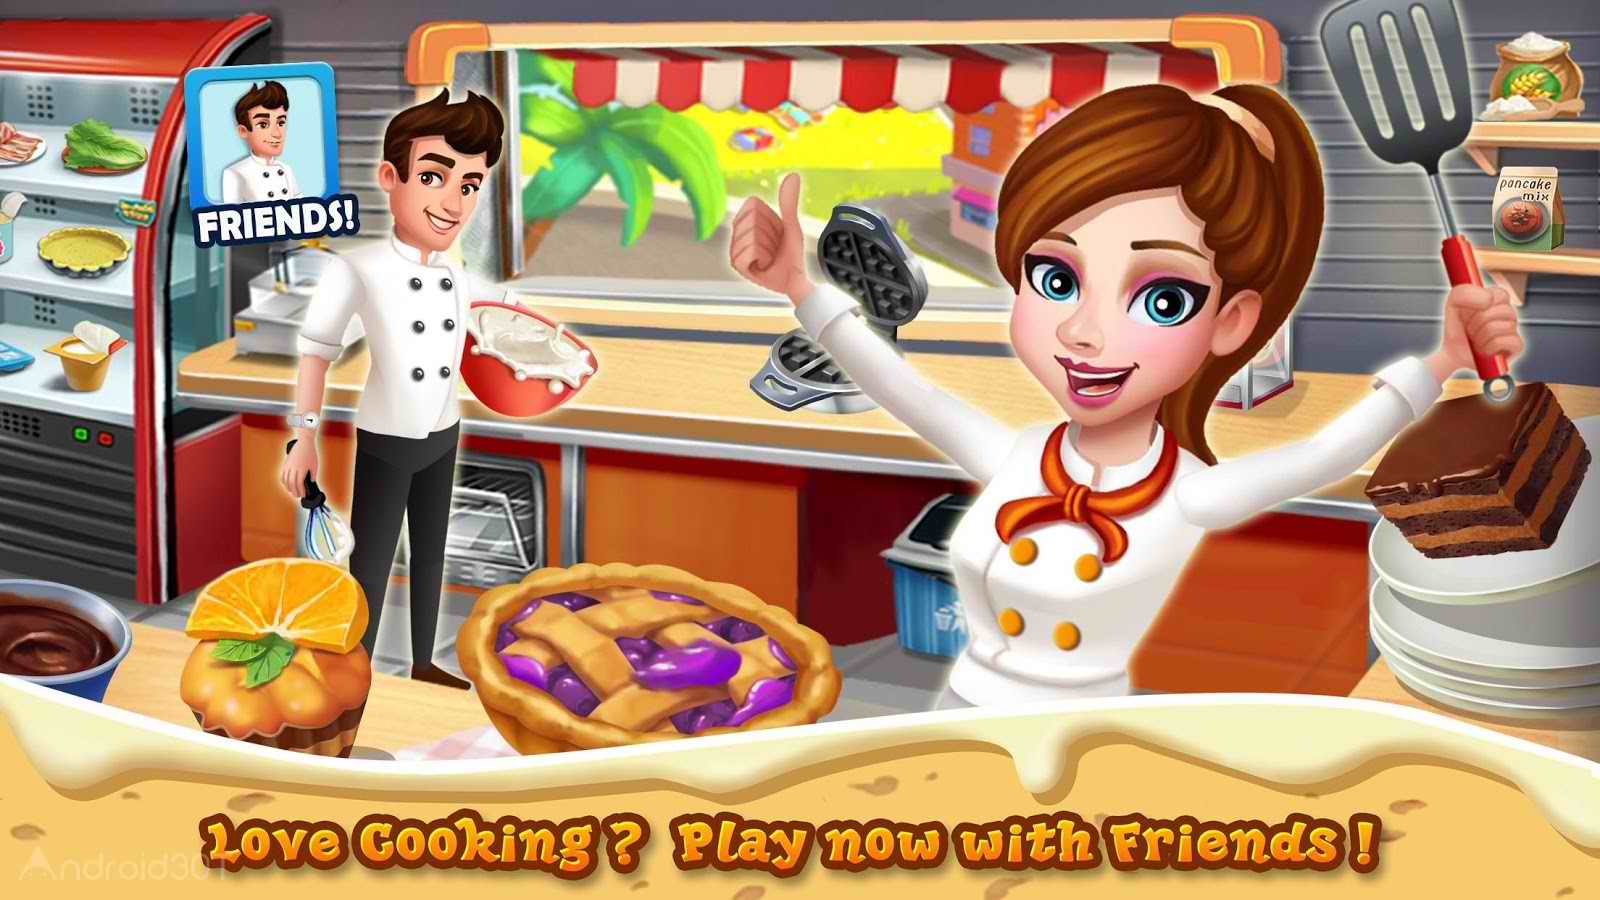 دانلود Rising Super Chef 2 : Cooking Game 6.4.0 – بازی رستوران داری سر آشپز 2 اندروید